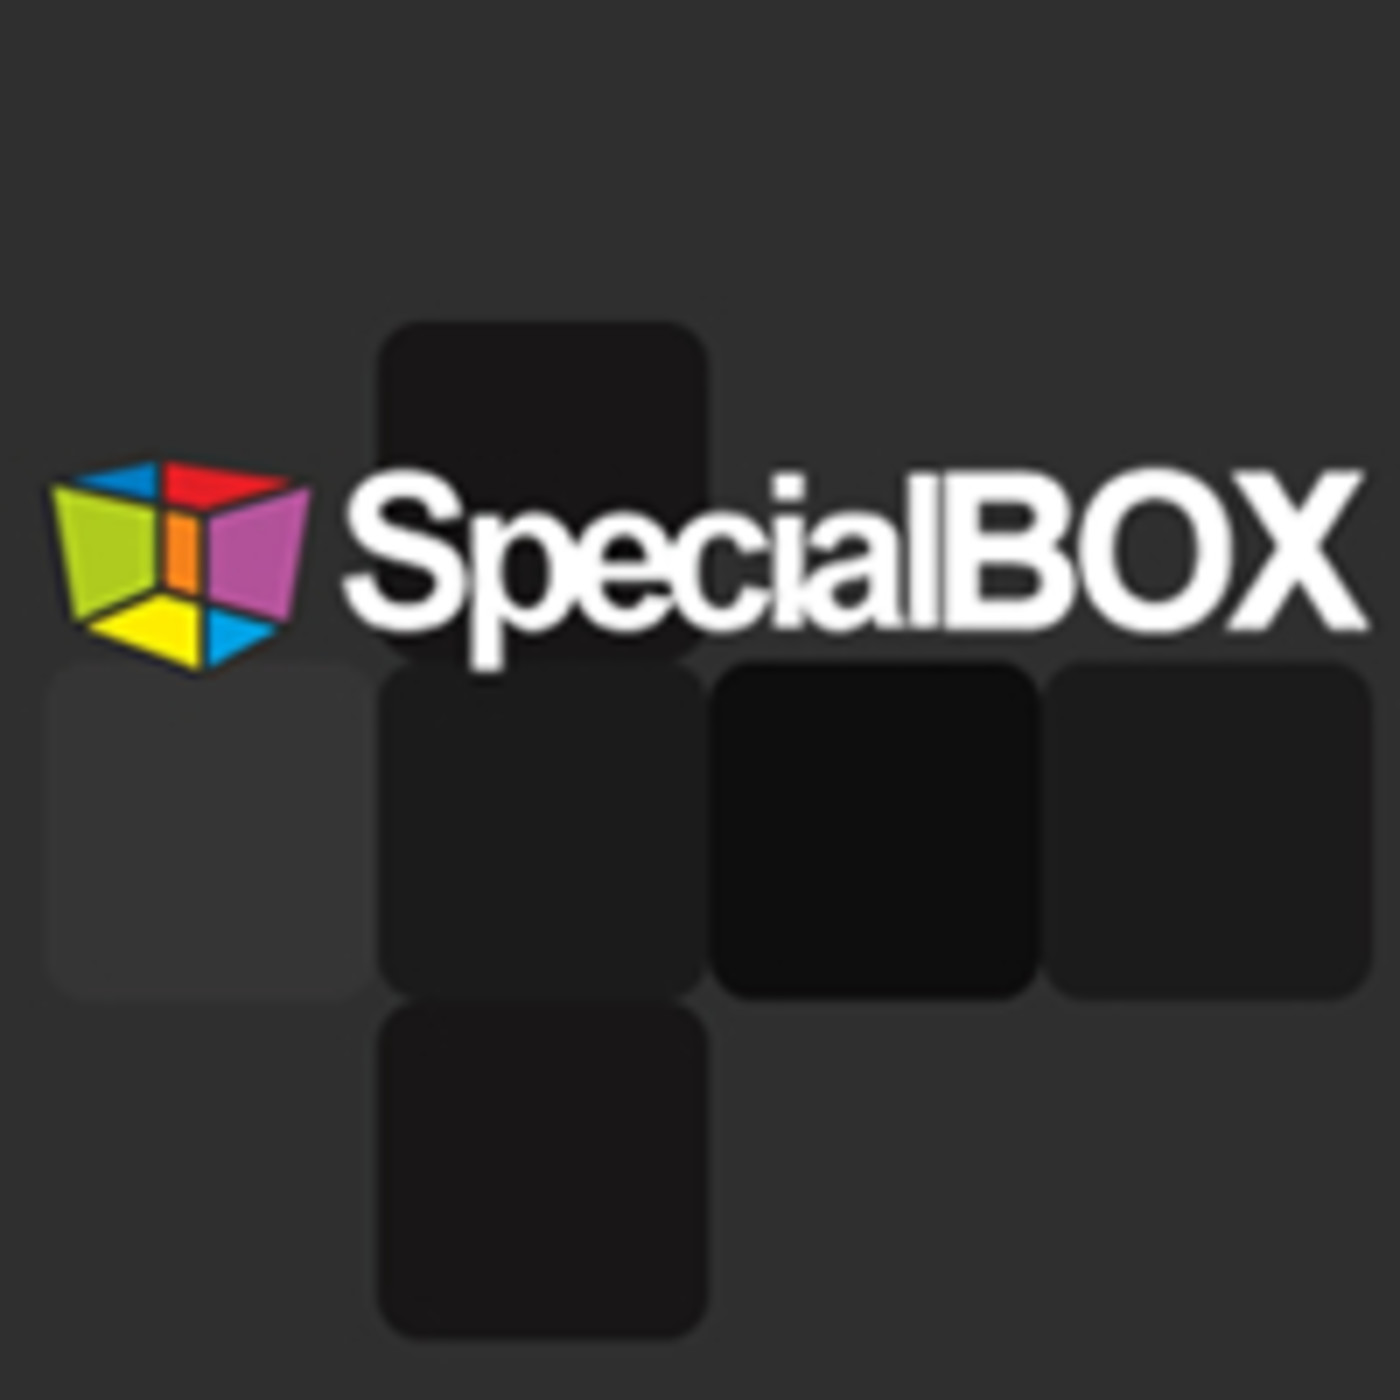 SPECIAL BOX ANTONIO OROZCO 21 de Octubre de 2018